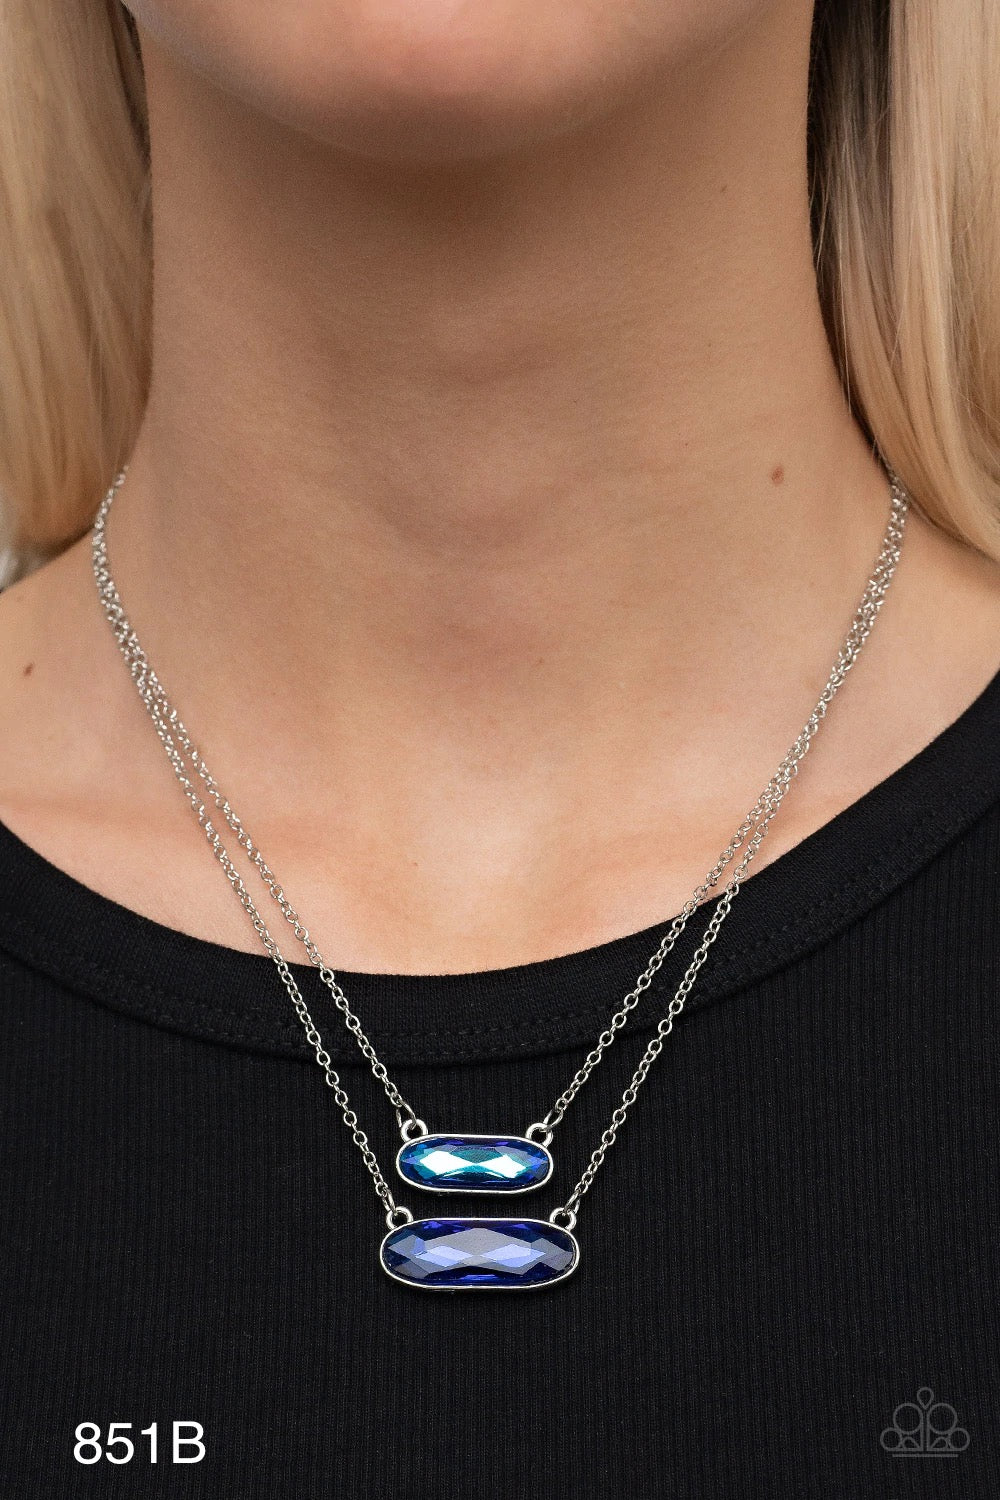 Paparazzi Accessories “Double Bubble Burst” Blue Necklace Earring Set